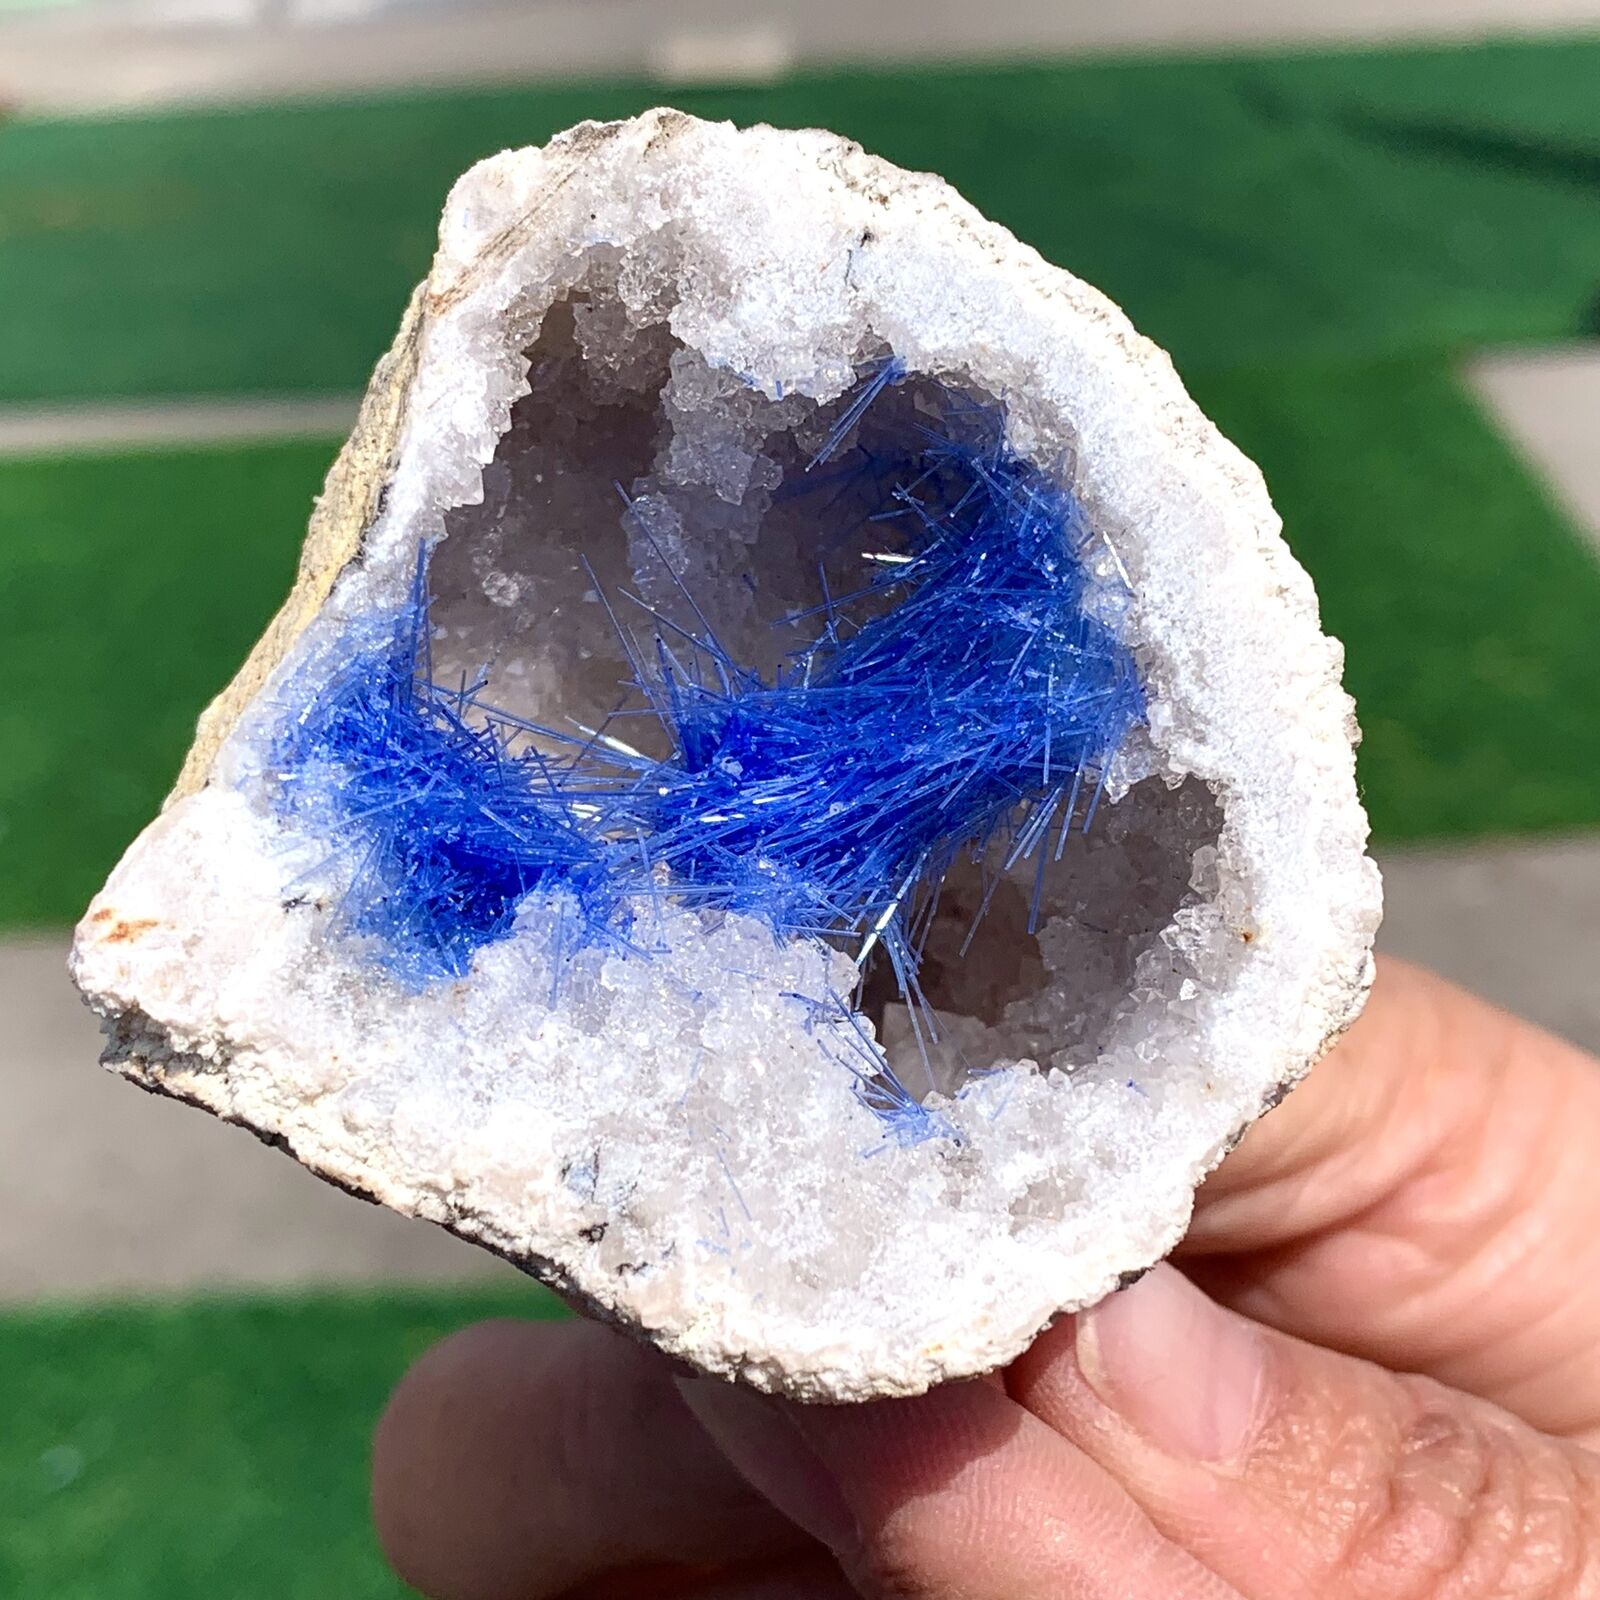 118G Rare Moroccan blue magnesite and quartz crystal coexisting specimen